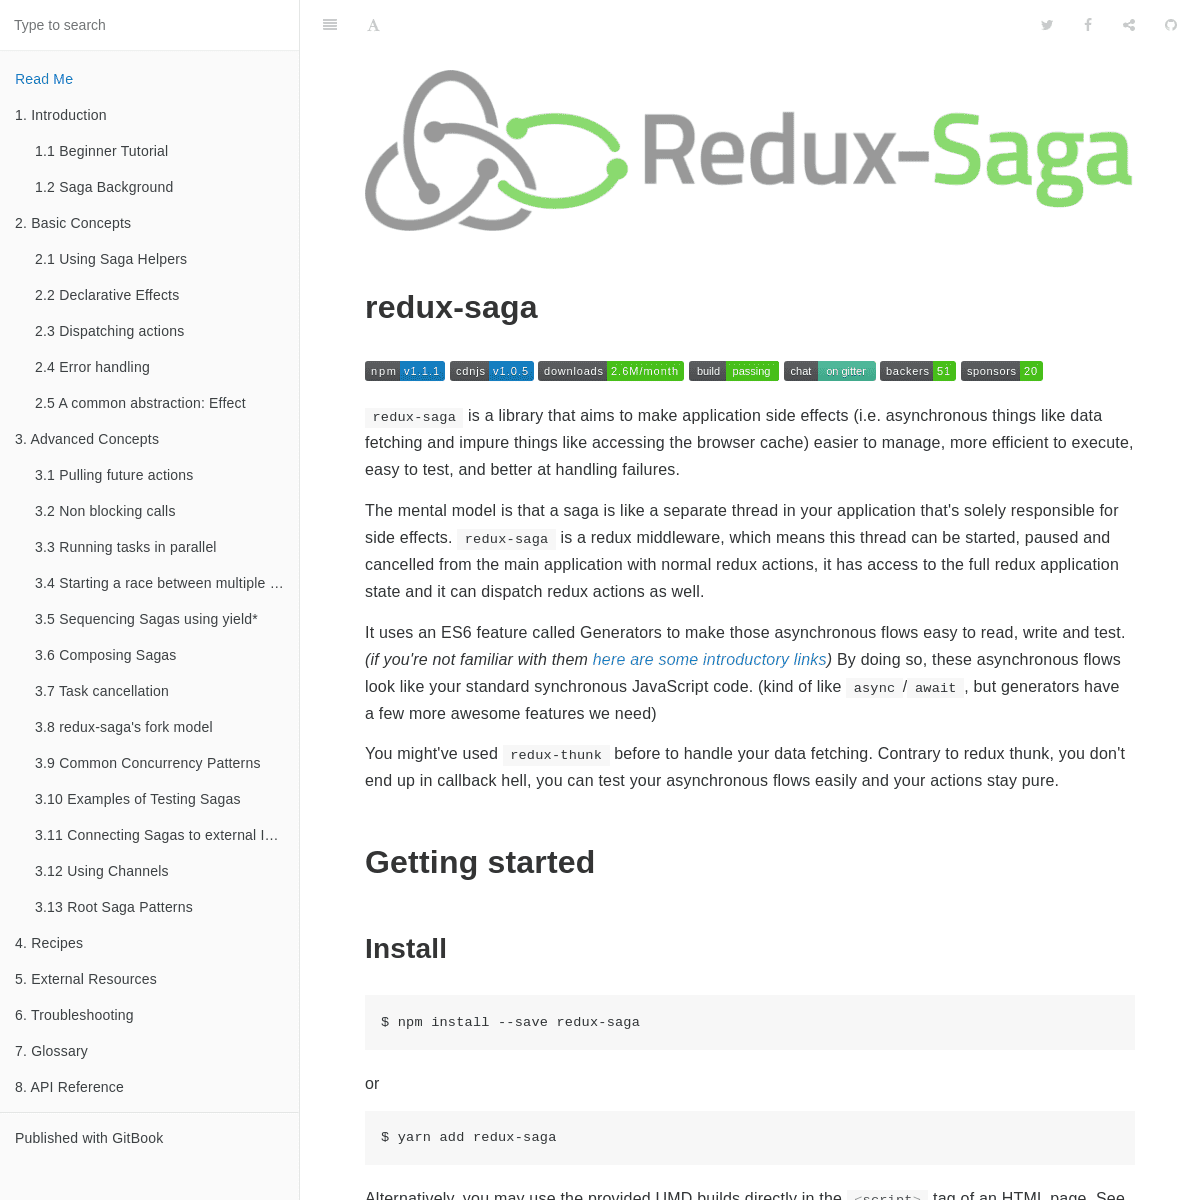 A complete backup of redux-saga.js.org